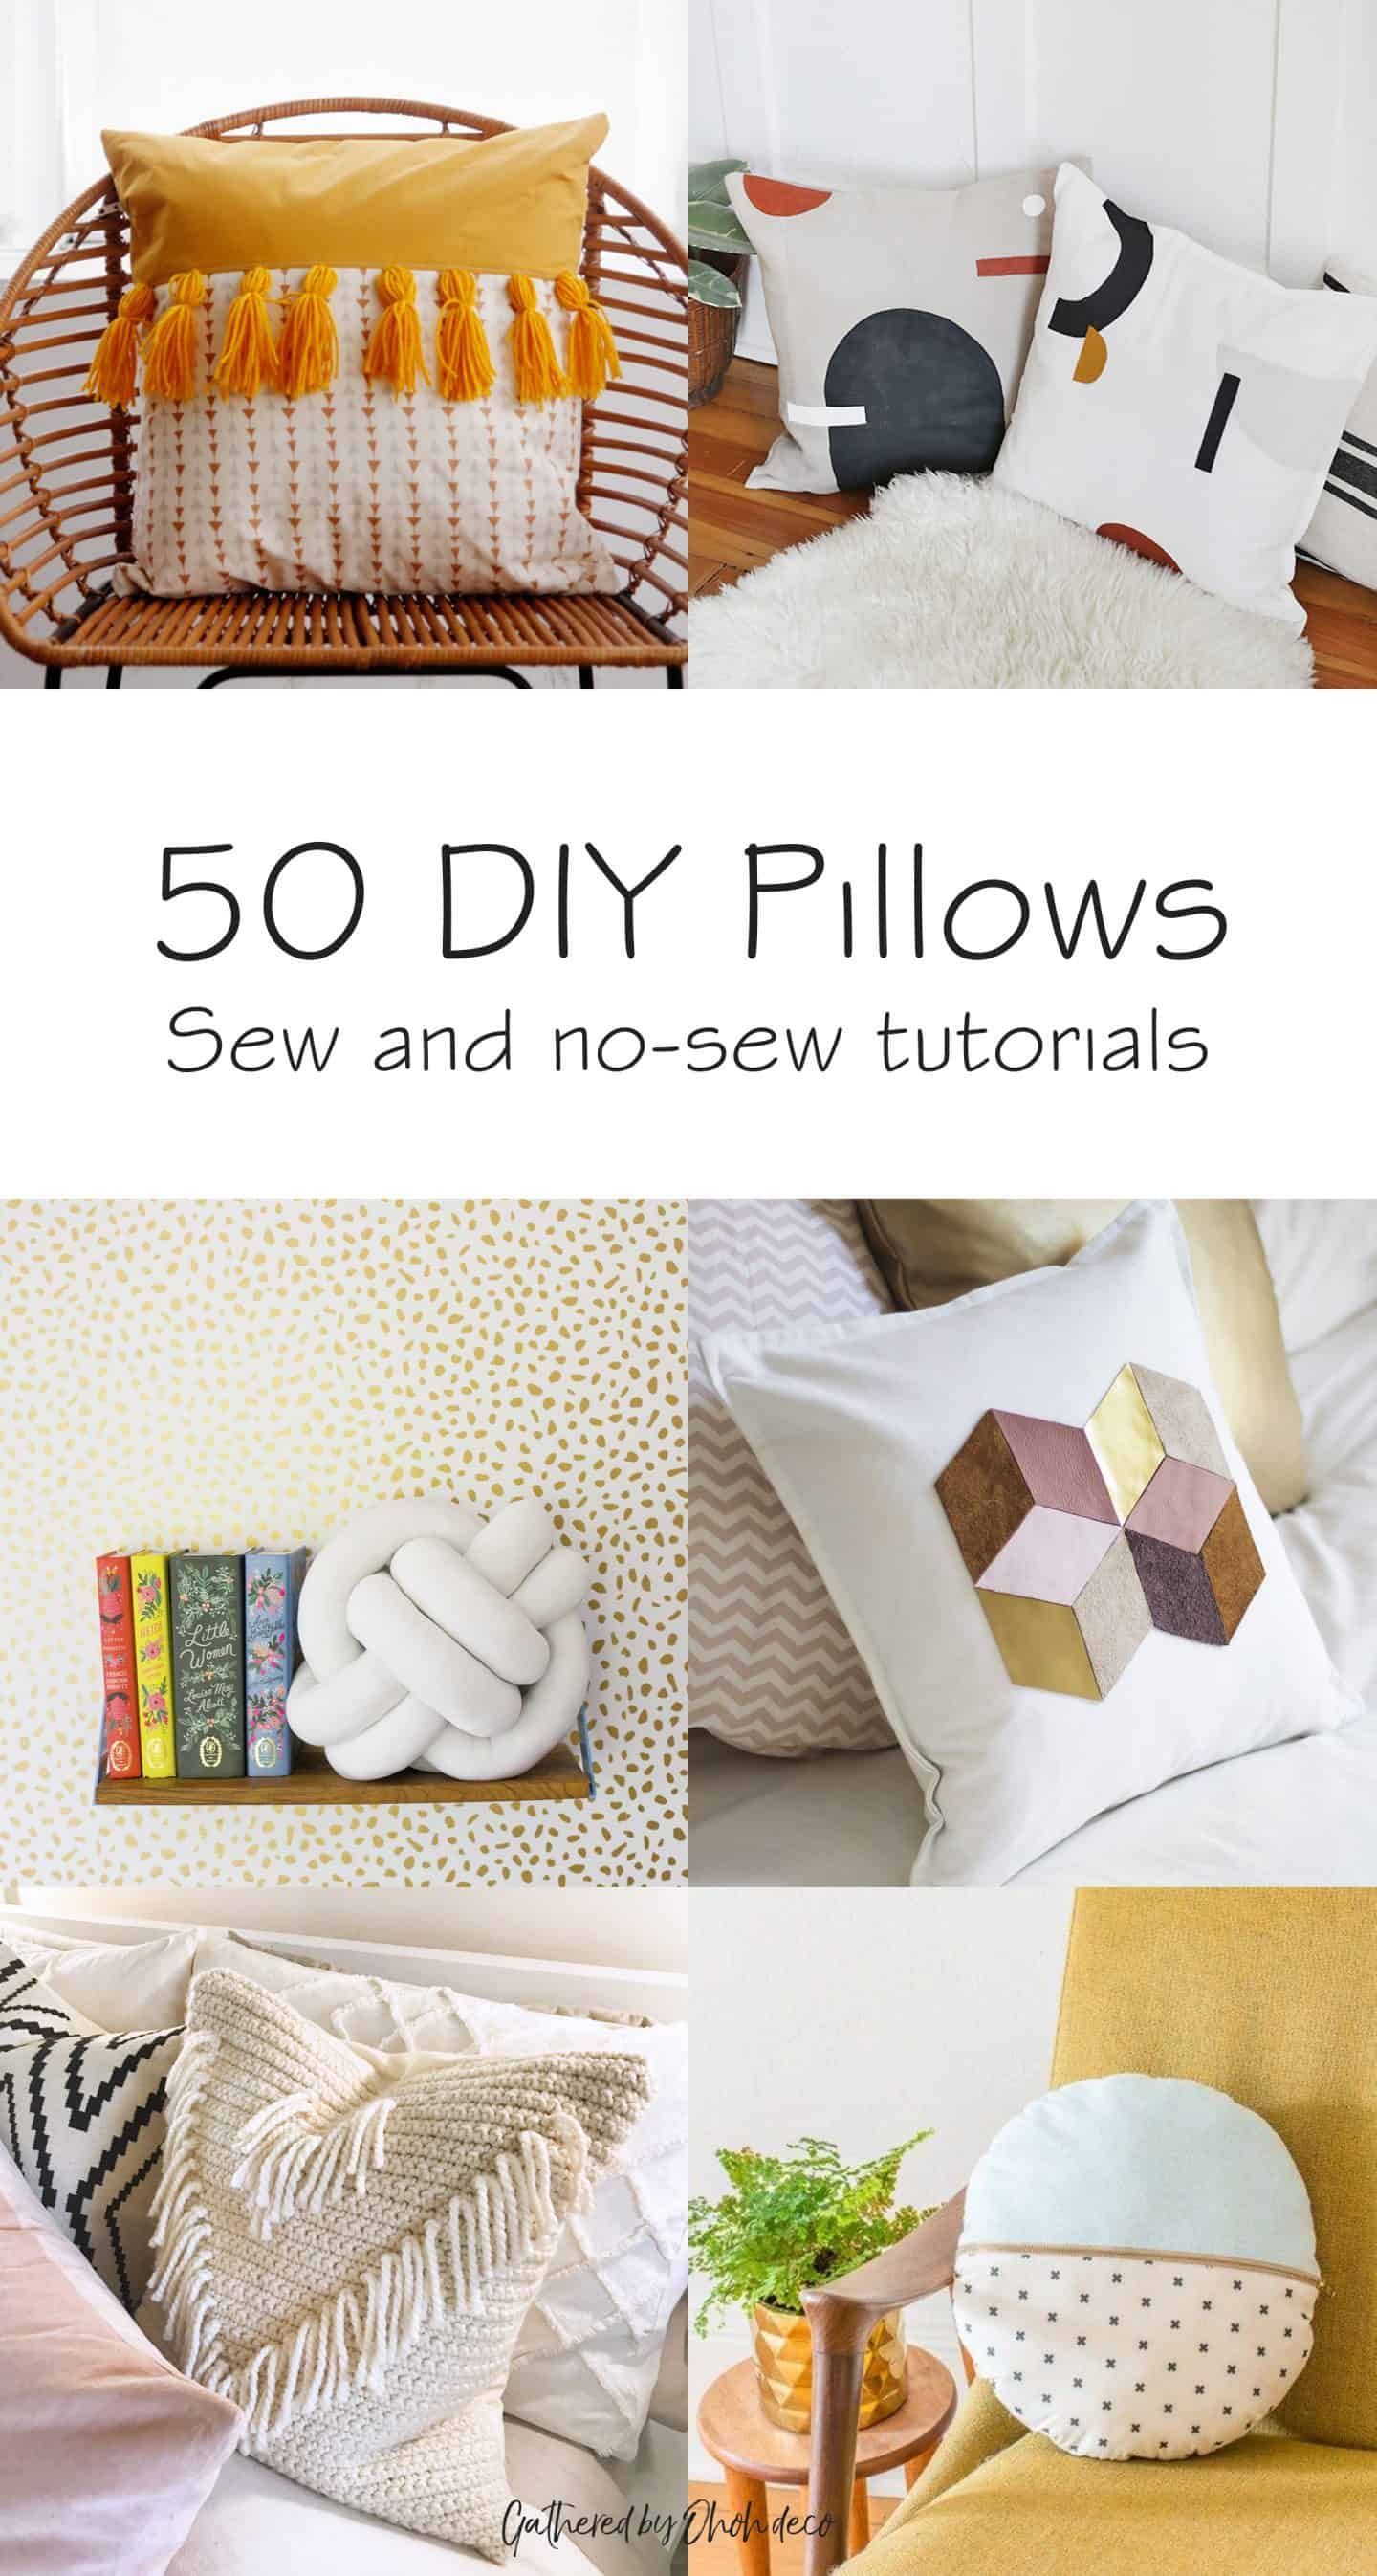 50 DIY pillows to jazz up your decor - Ohoh deco - 50 DIY pillows to jazz up your decor - Ohoh deco -   19 diy Pillows big ideas